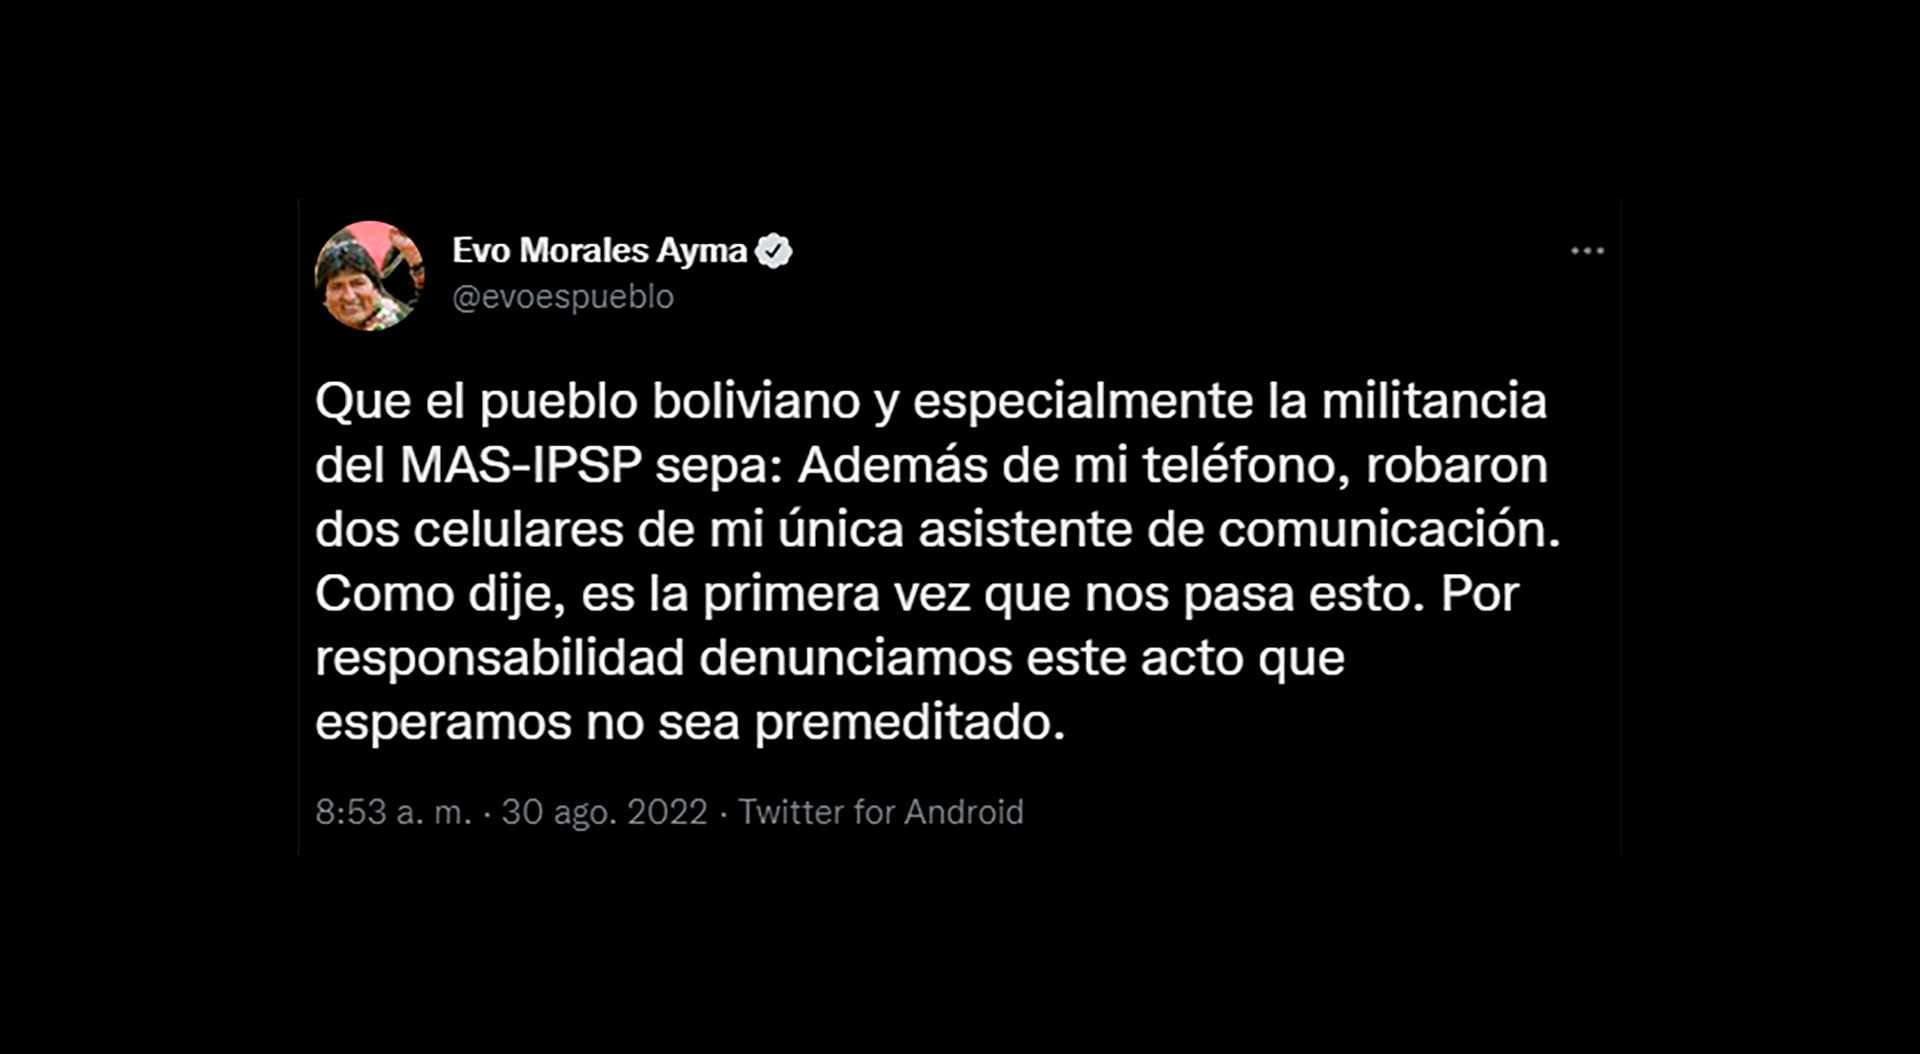 El mensaje de Evo Morales en Twitter